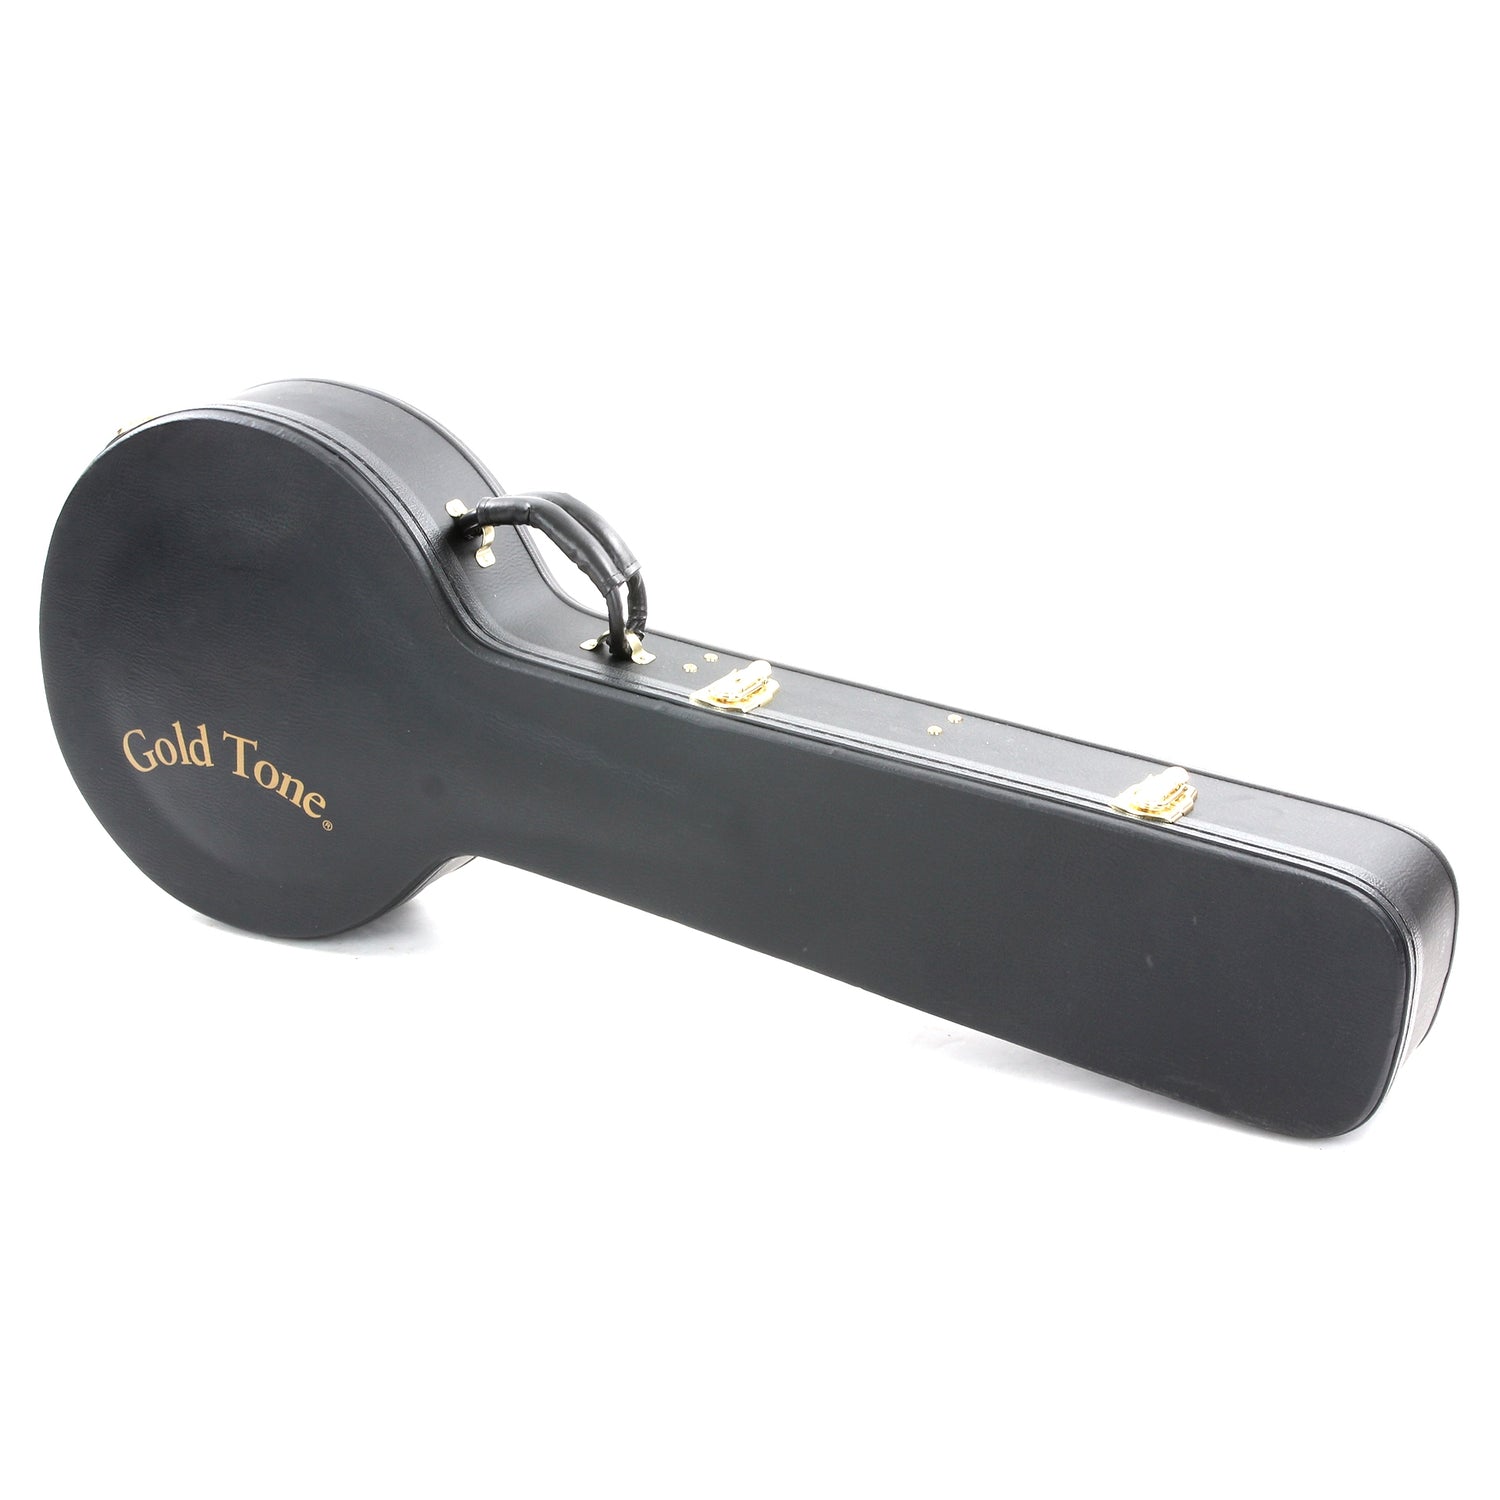 Image 12 of Gold Tone OB-150 Orange Blossom Banjo & Case - SKU# GTOB150 : Product Type Resonator Back Banjos : Elderly Instruments